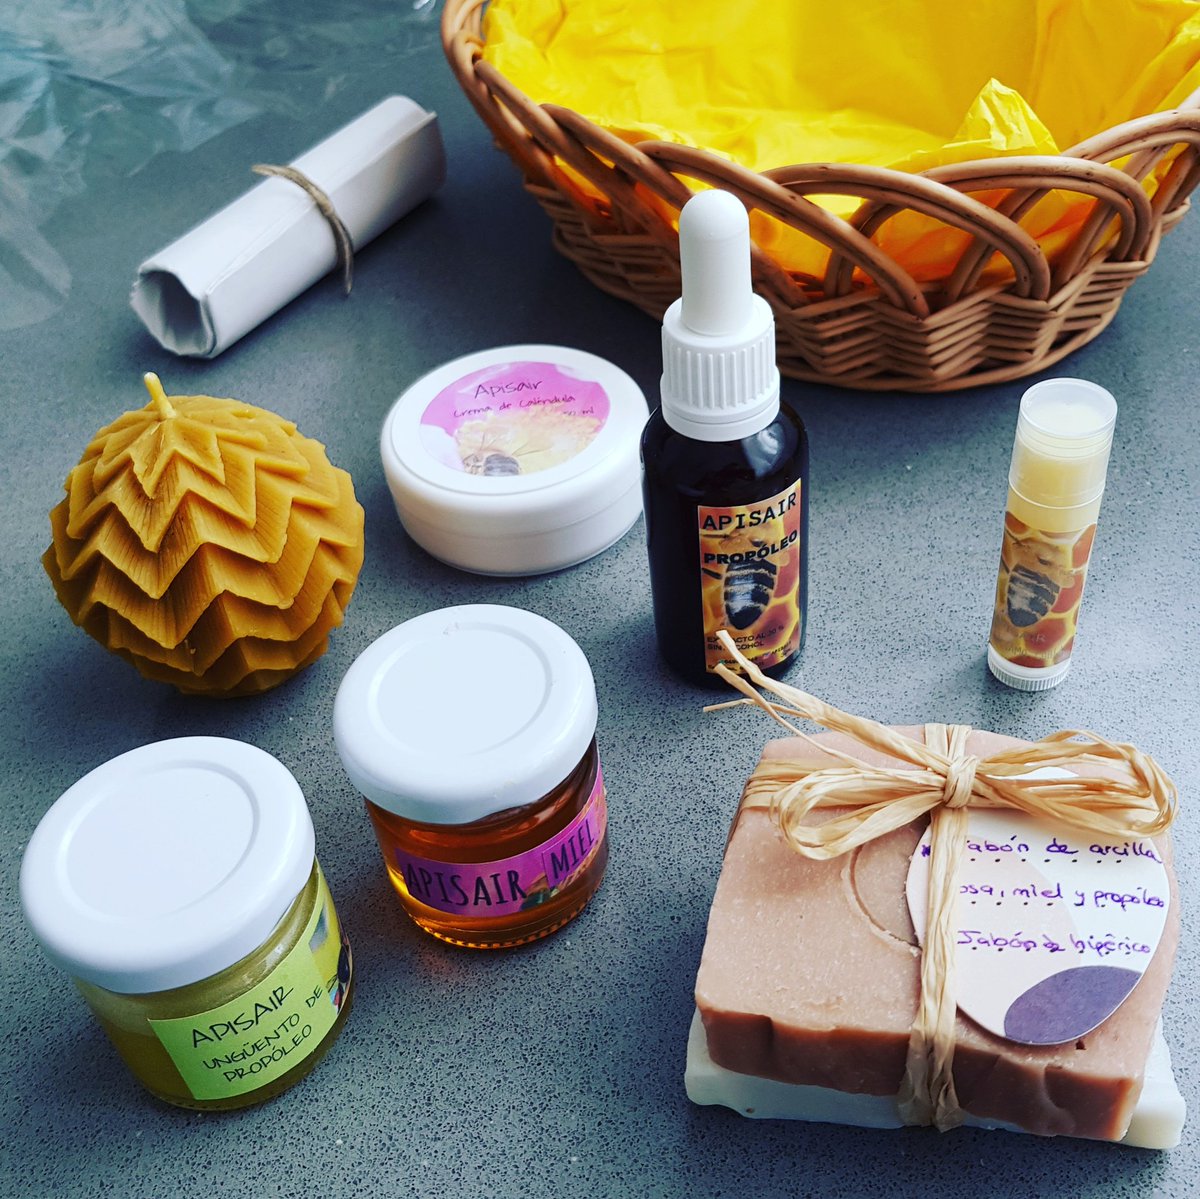 Que contenta se ha puesto @CarolMFR84 con este regalo ecologico, saludable y original 🎁🌍 productos de la colmena @APISAIR1 🐝💛🧡💛🧡
#regalosoriginales #apicultura #abejas #mieldeabeja #productodecantabria #apisair #miel #mielapisair